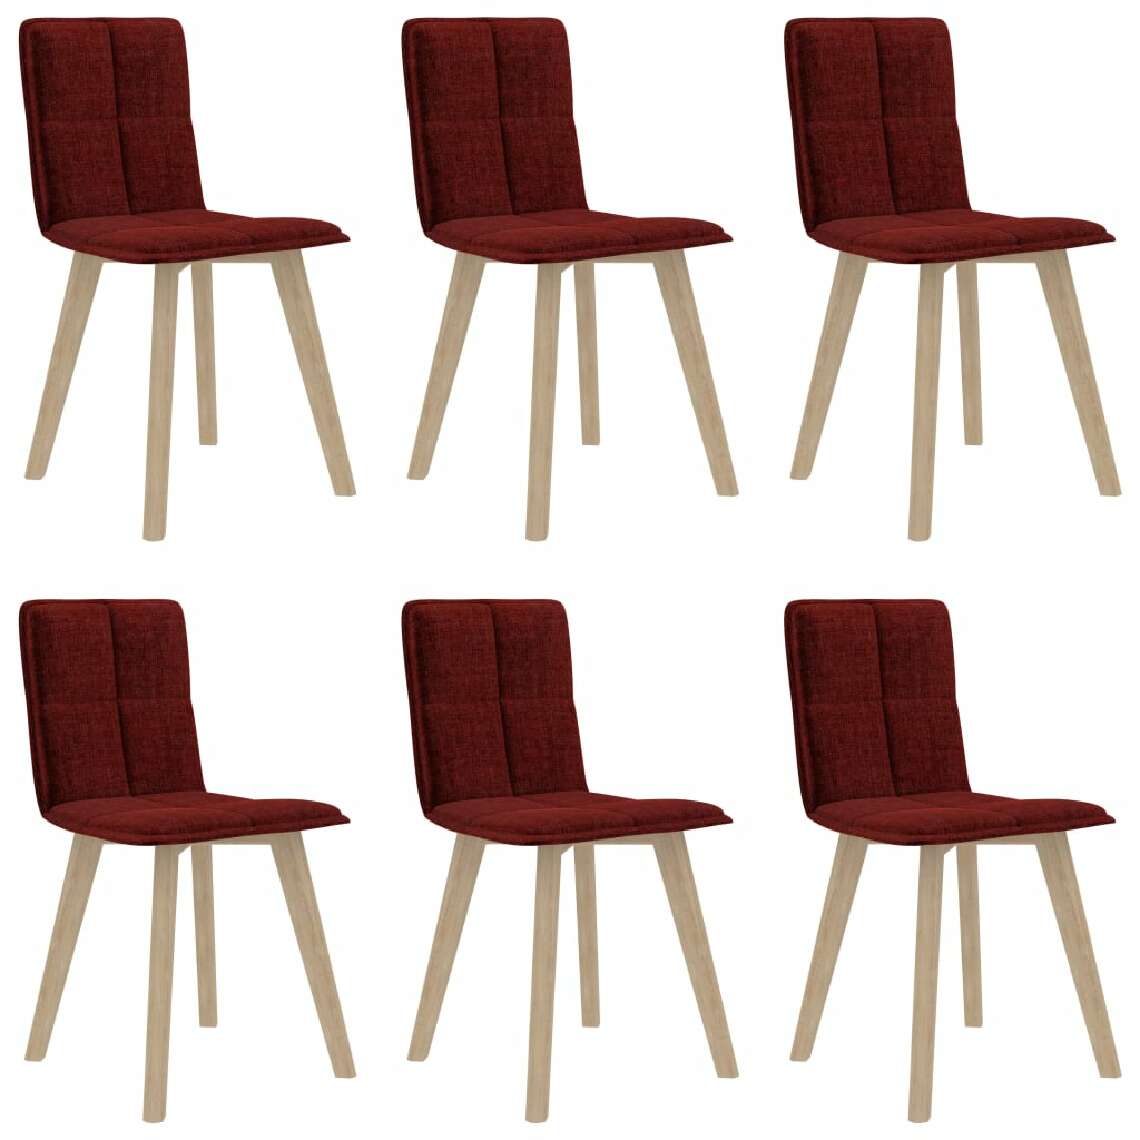 Chunhelife - Chunhelife Chaises de salle à manger 6 pcs Rouge bordeaux - Chaises